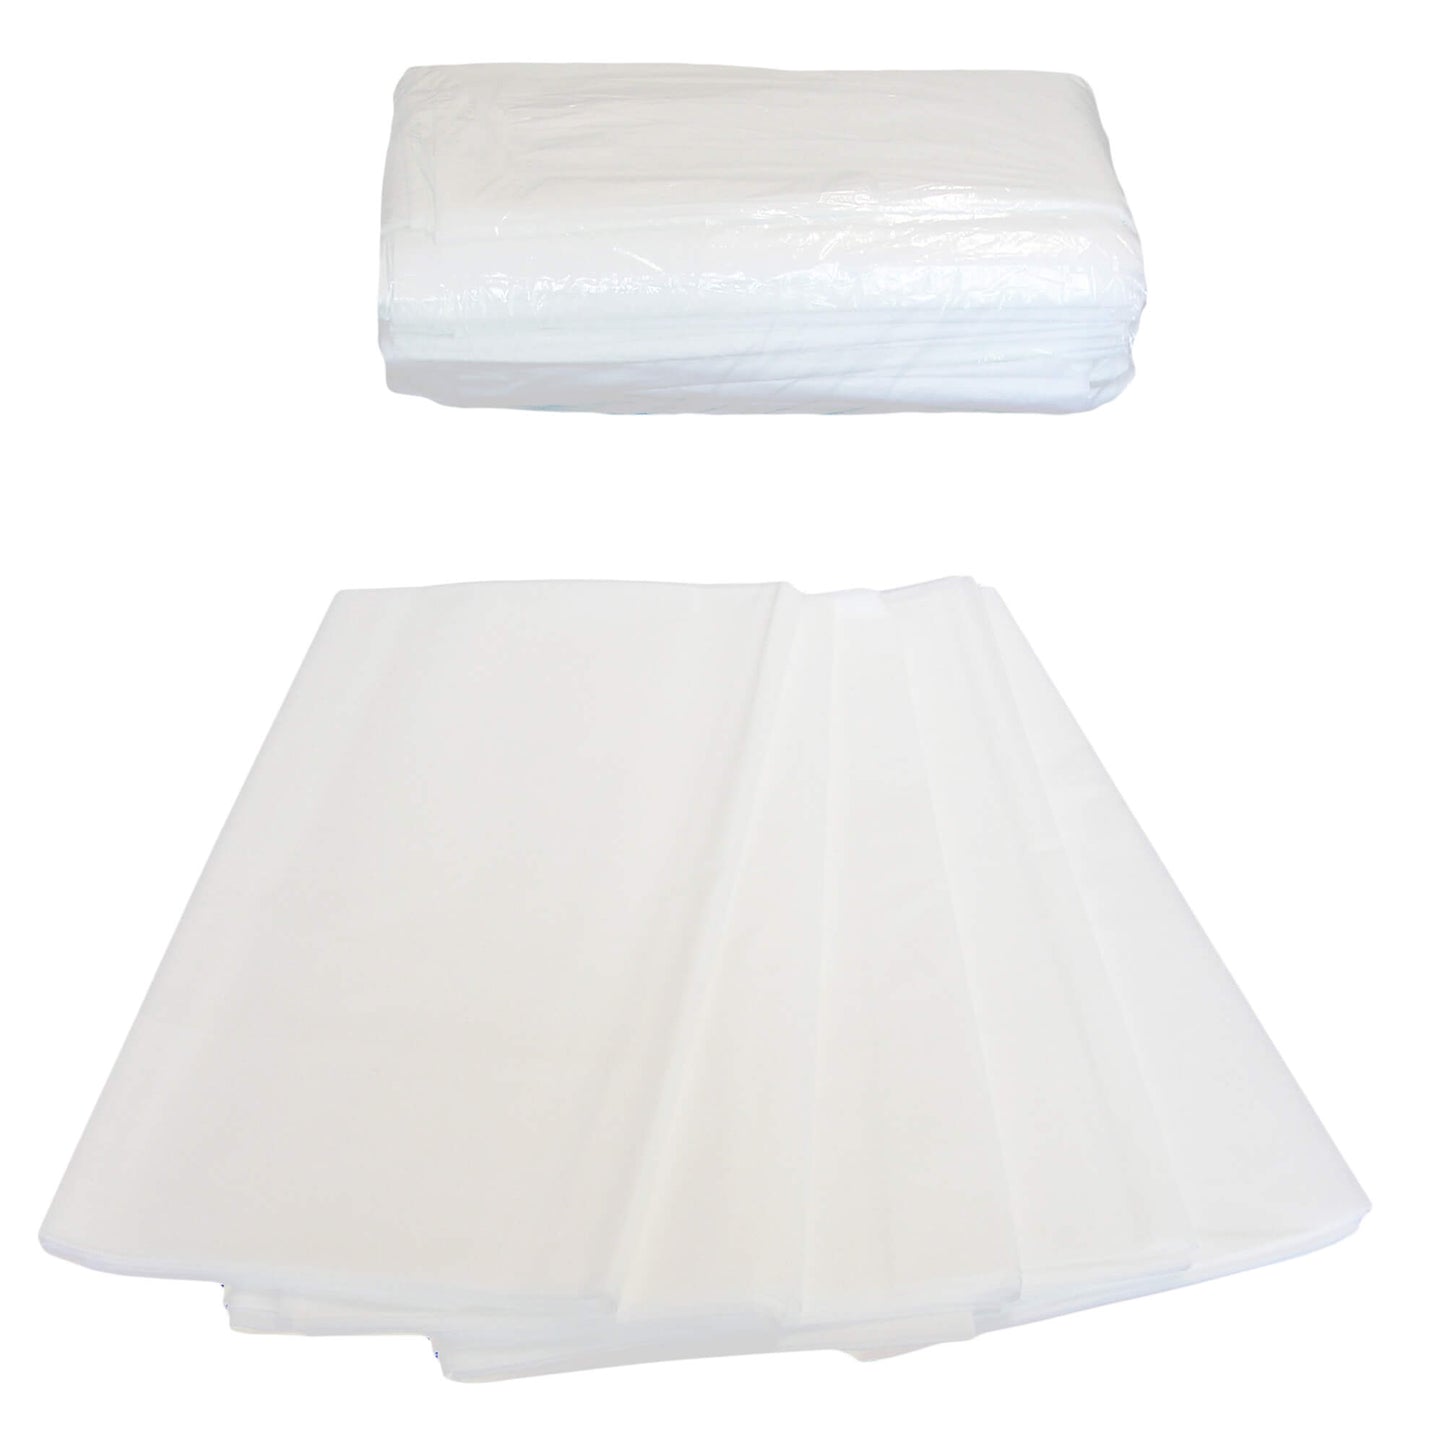 Disposable bed sheets EL3 80x210 cm